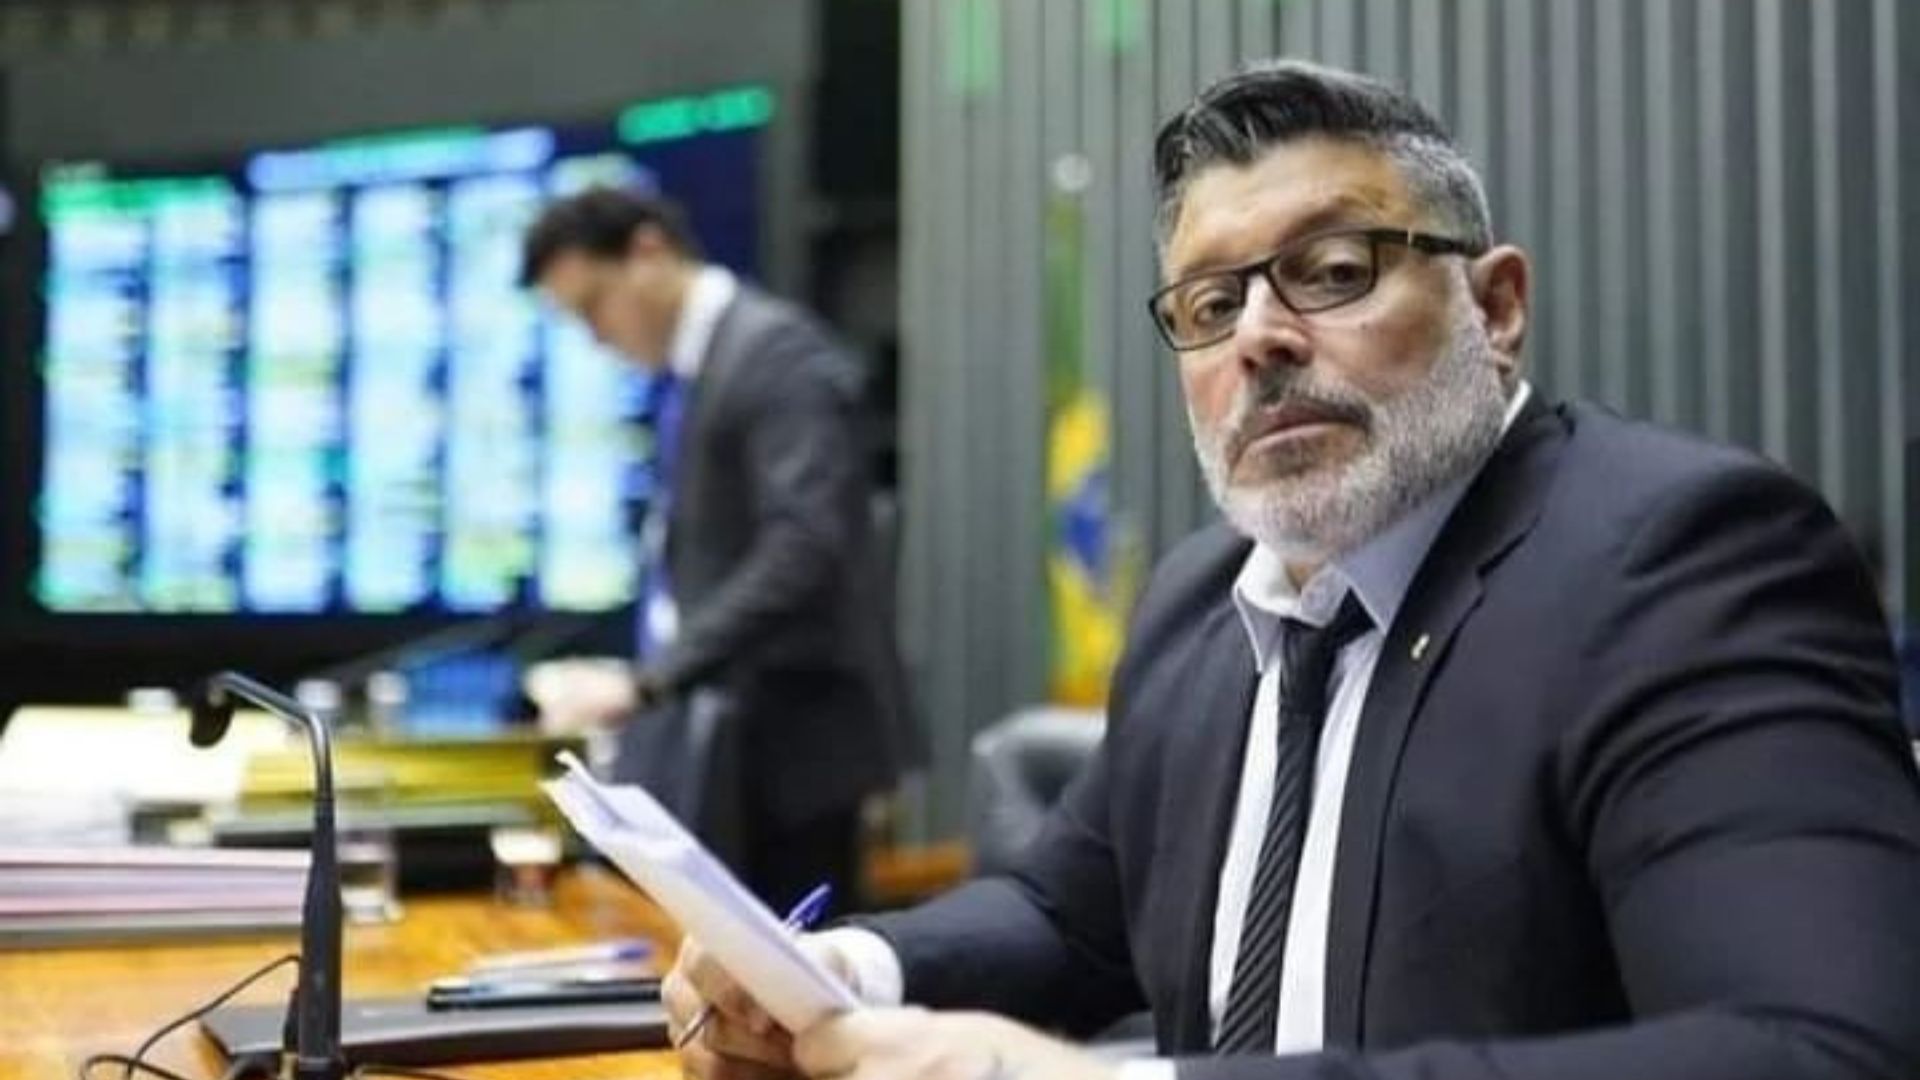 Alexandre Frota comparou o profissional com o presidente Jair Bolsonaro - Foto: Reprodução/Instagram @alexandrefrota_oficial